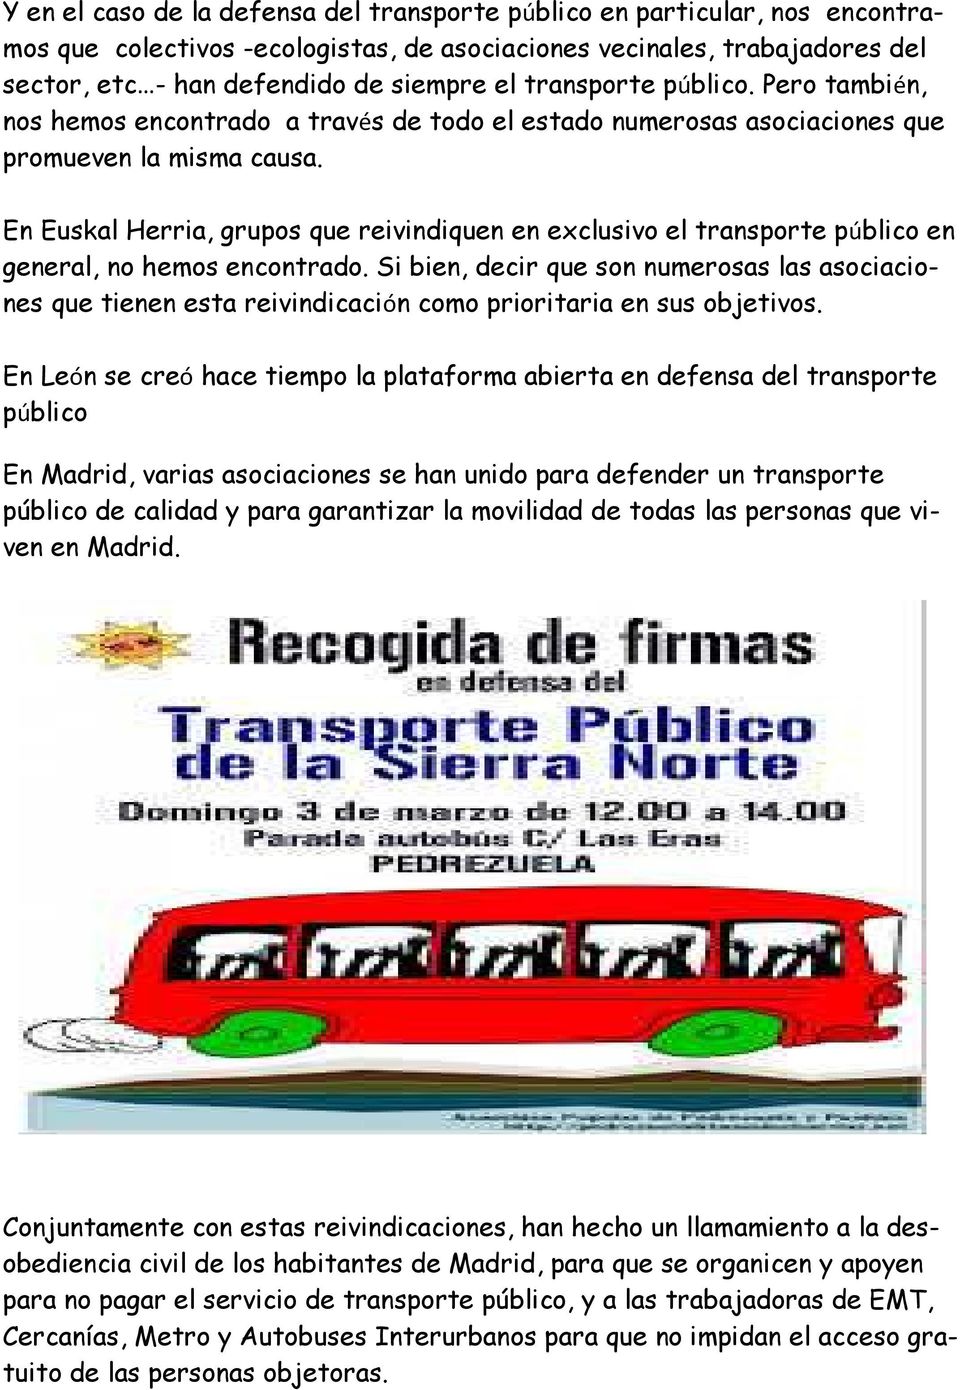 En Euskal Herria, grupos que reivindiquen en exclusivo el transporte público en general, no hemos encontrado.